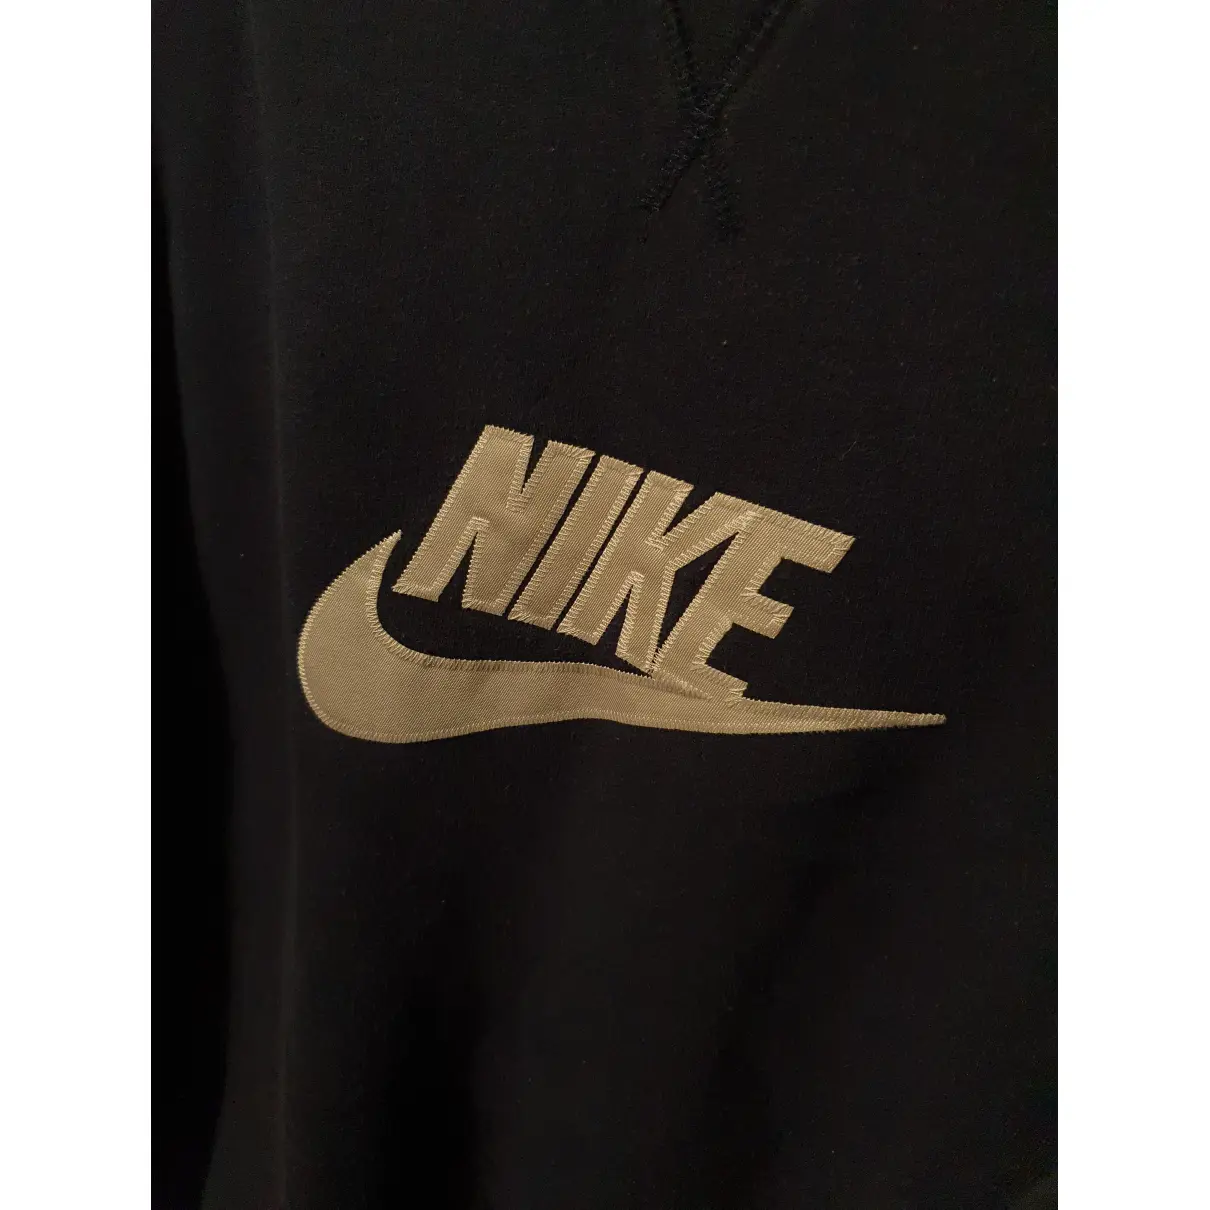 Buy Nike Sweatshirt online - Vintage